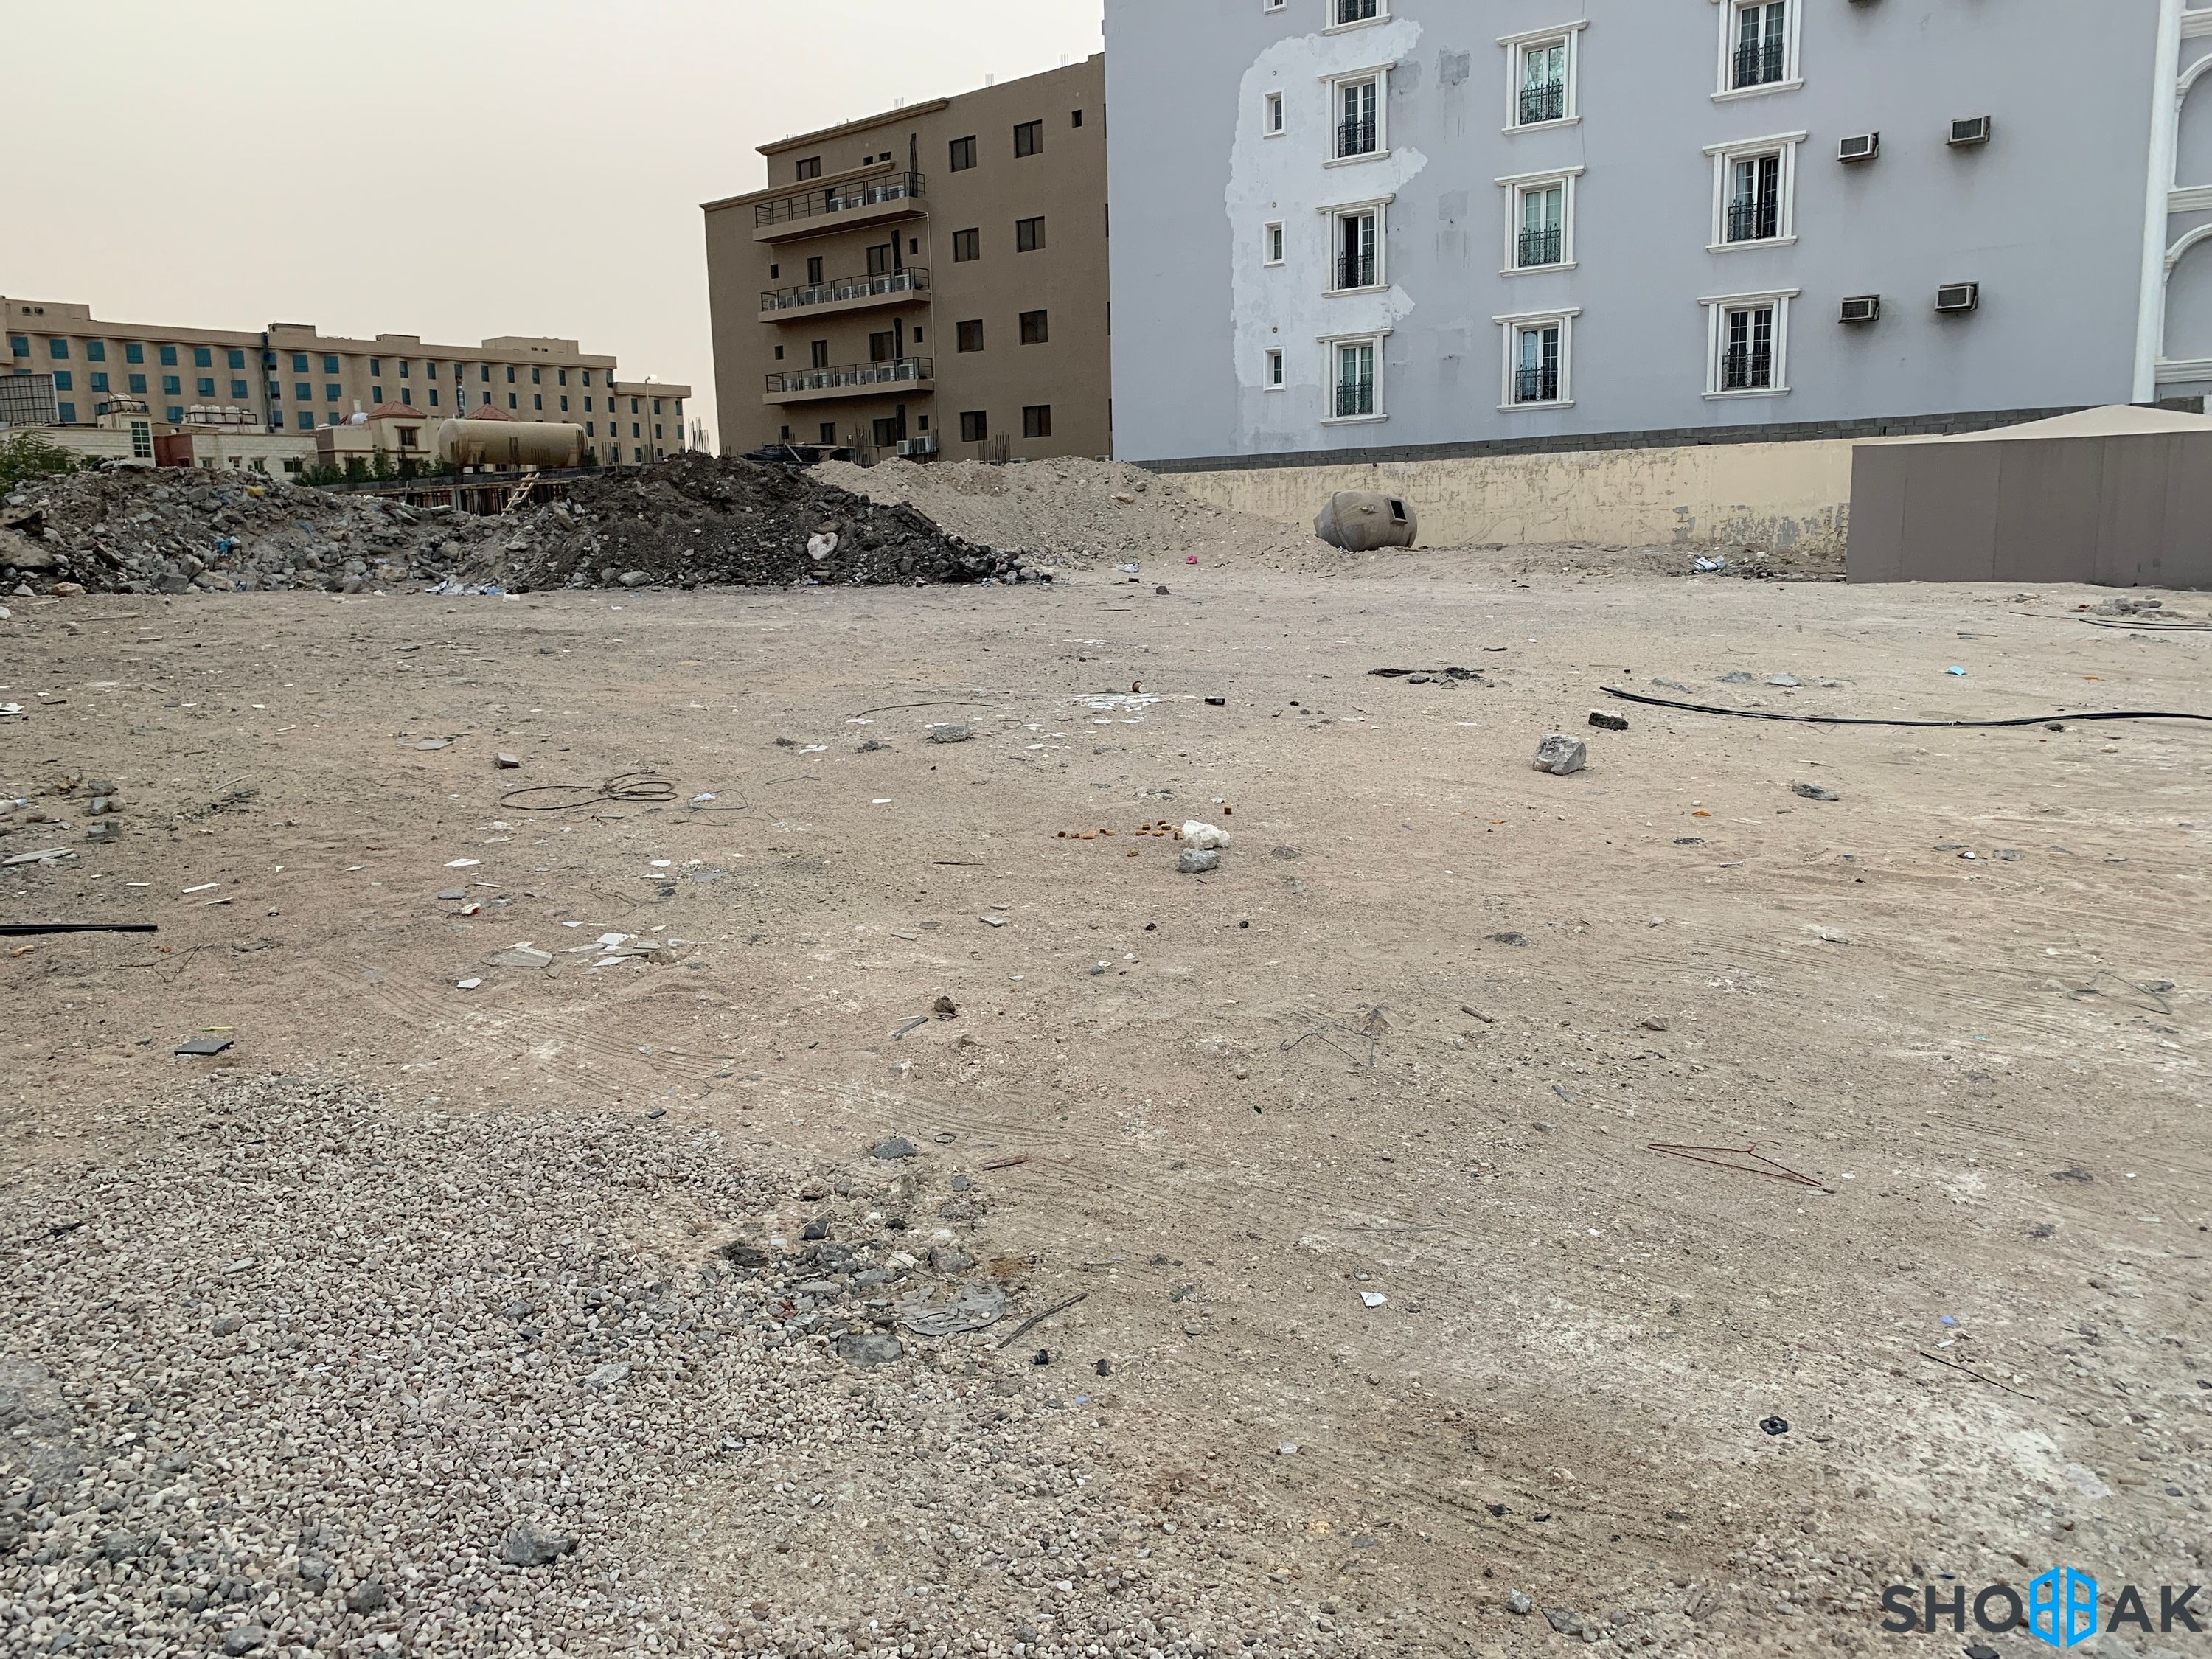 أرض للبيع حي العليا شارع 5 مقابل جامع إبراهيم العجمي Shobbak Saudi Arabia